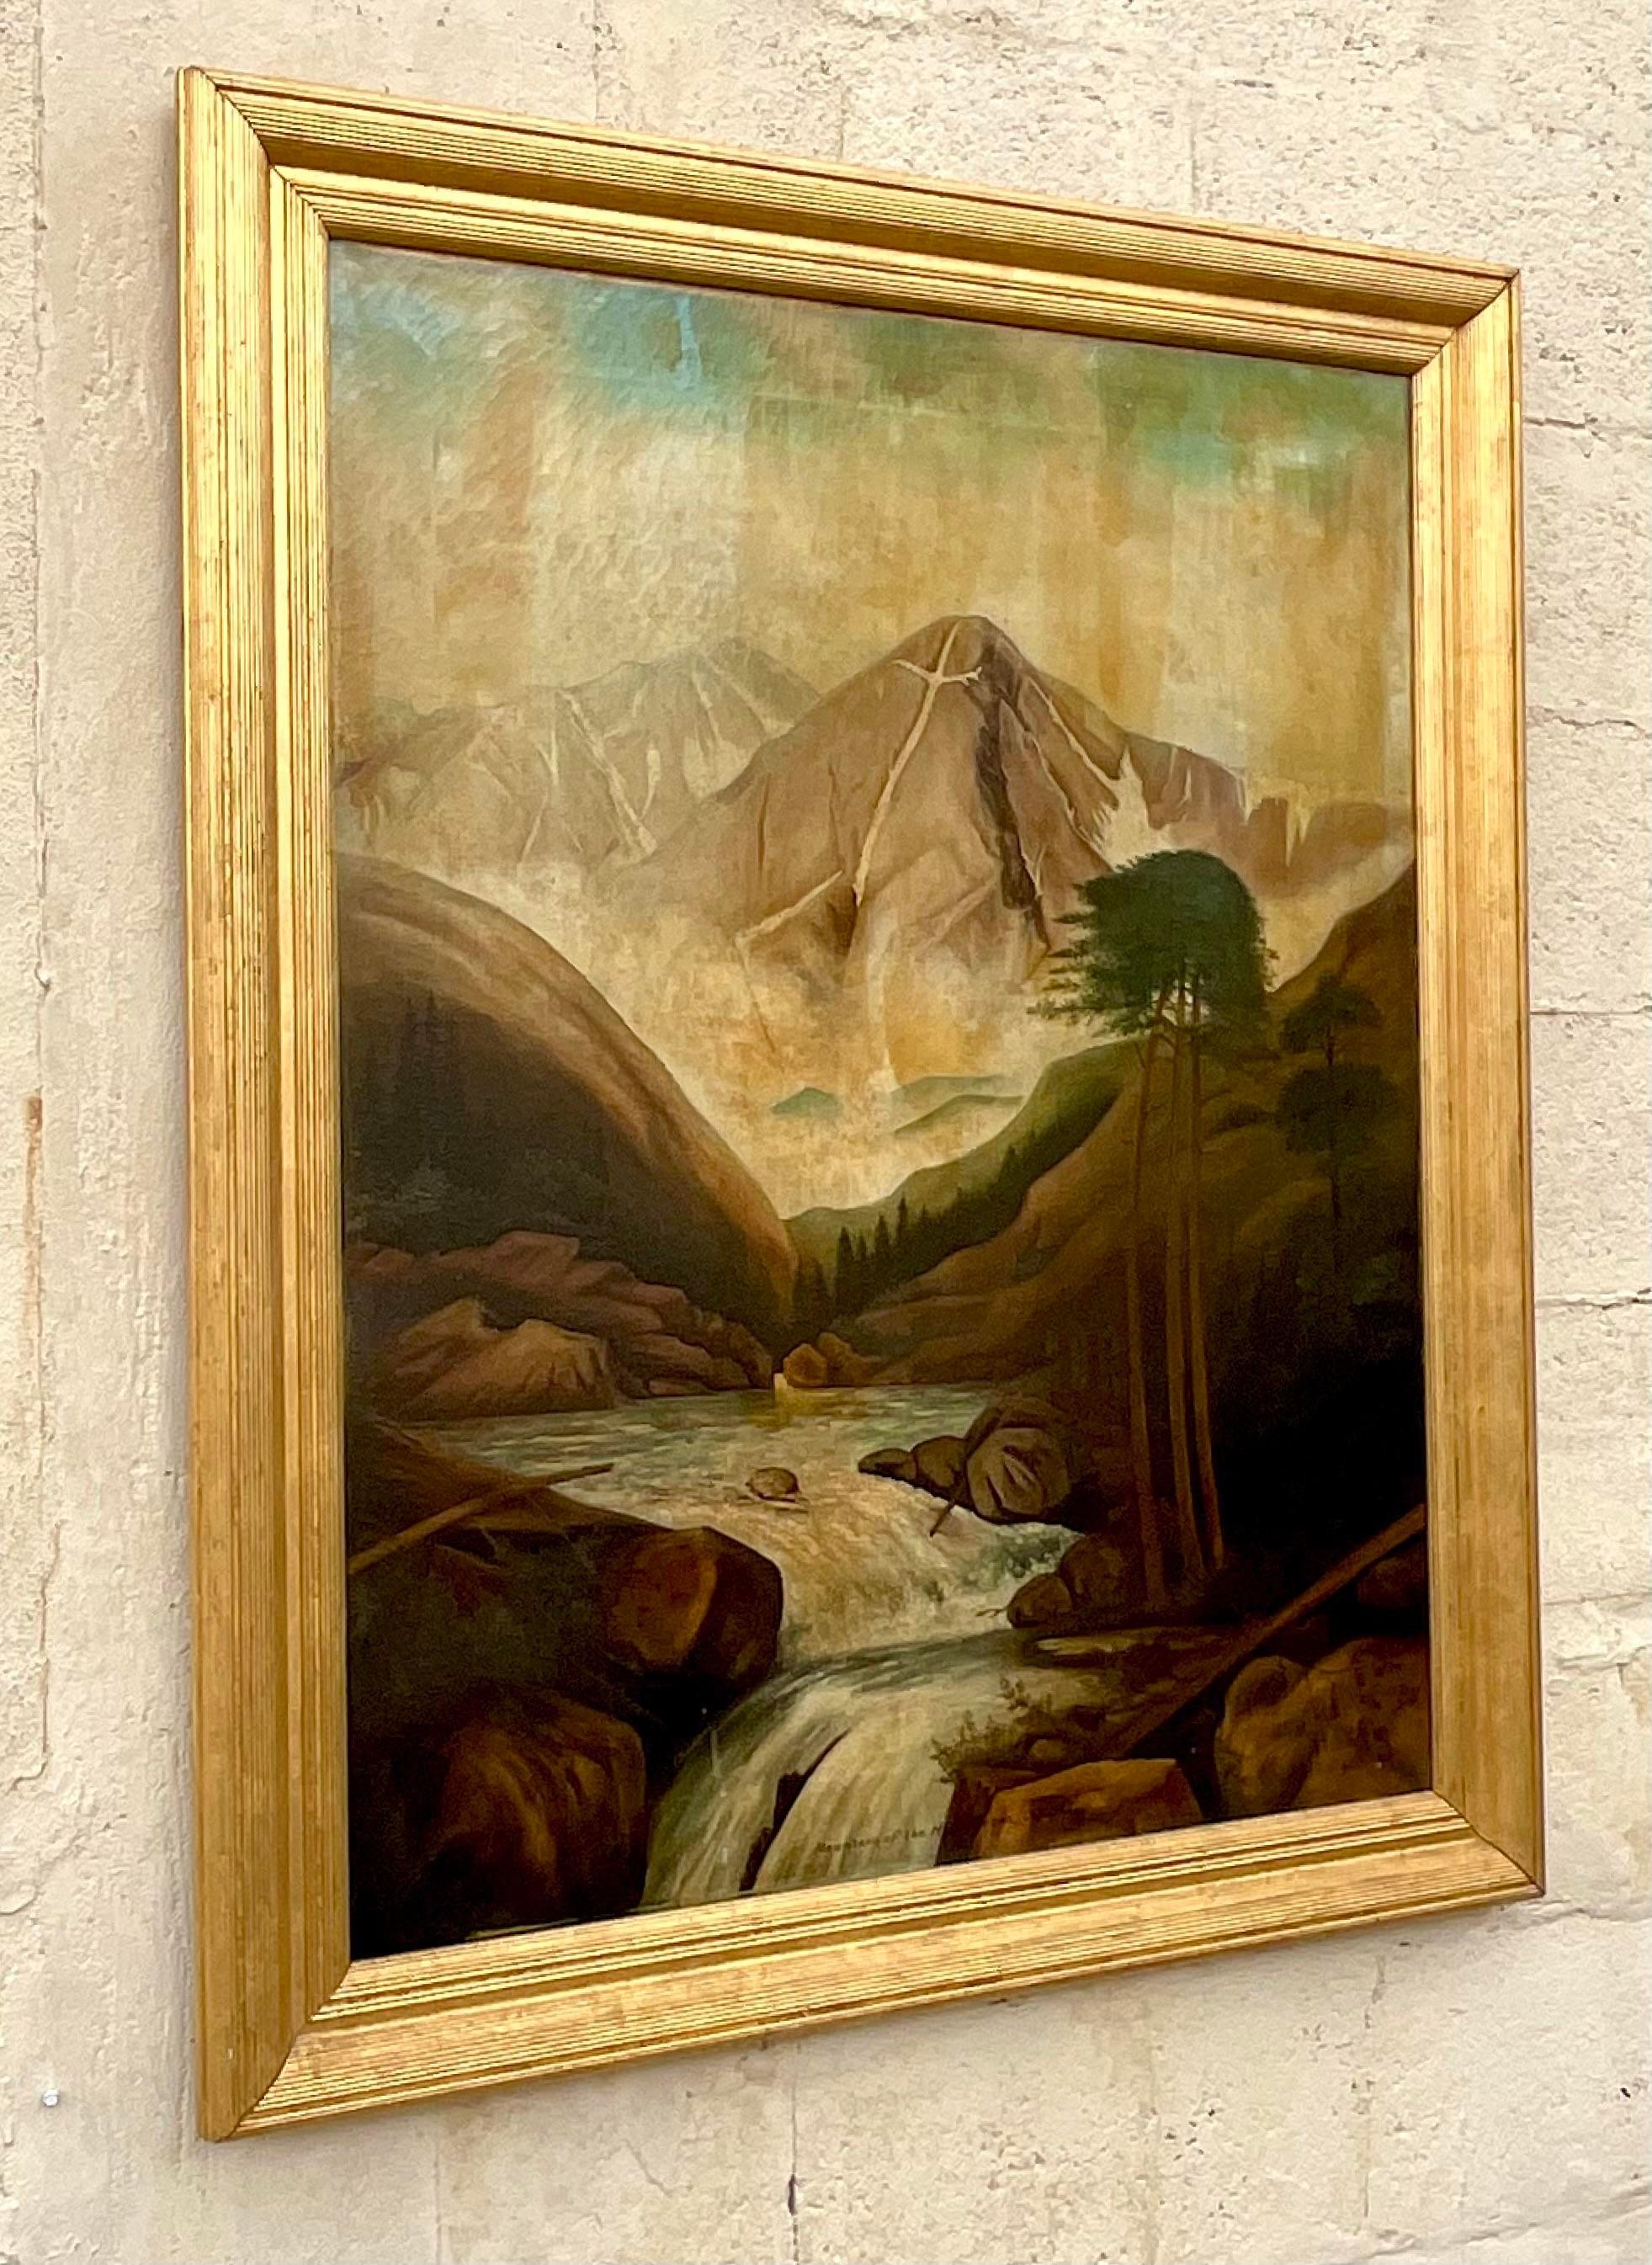 Une fantastique peinture à l'huile originale sur toile encadrée dans un magnifique cadre doré. Un chic  Composition de l'Ouest américain 